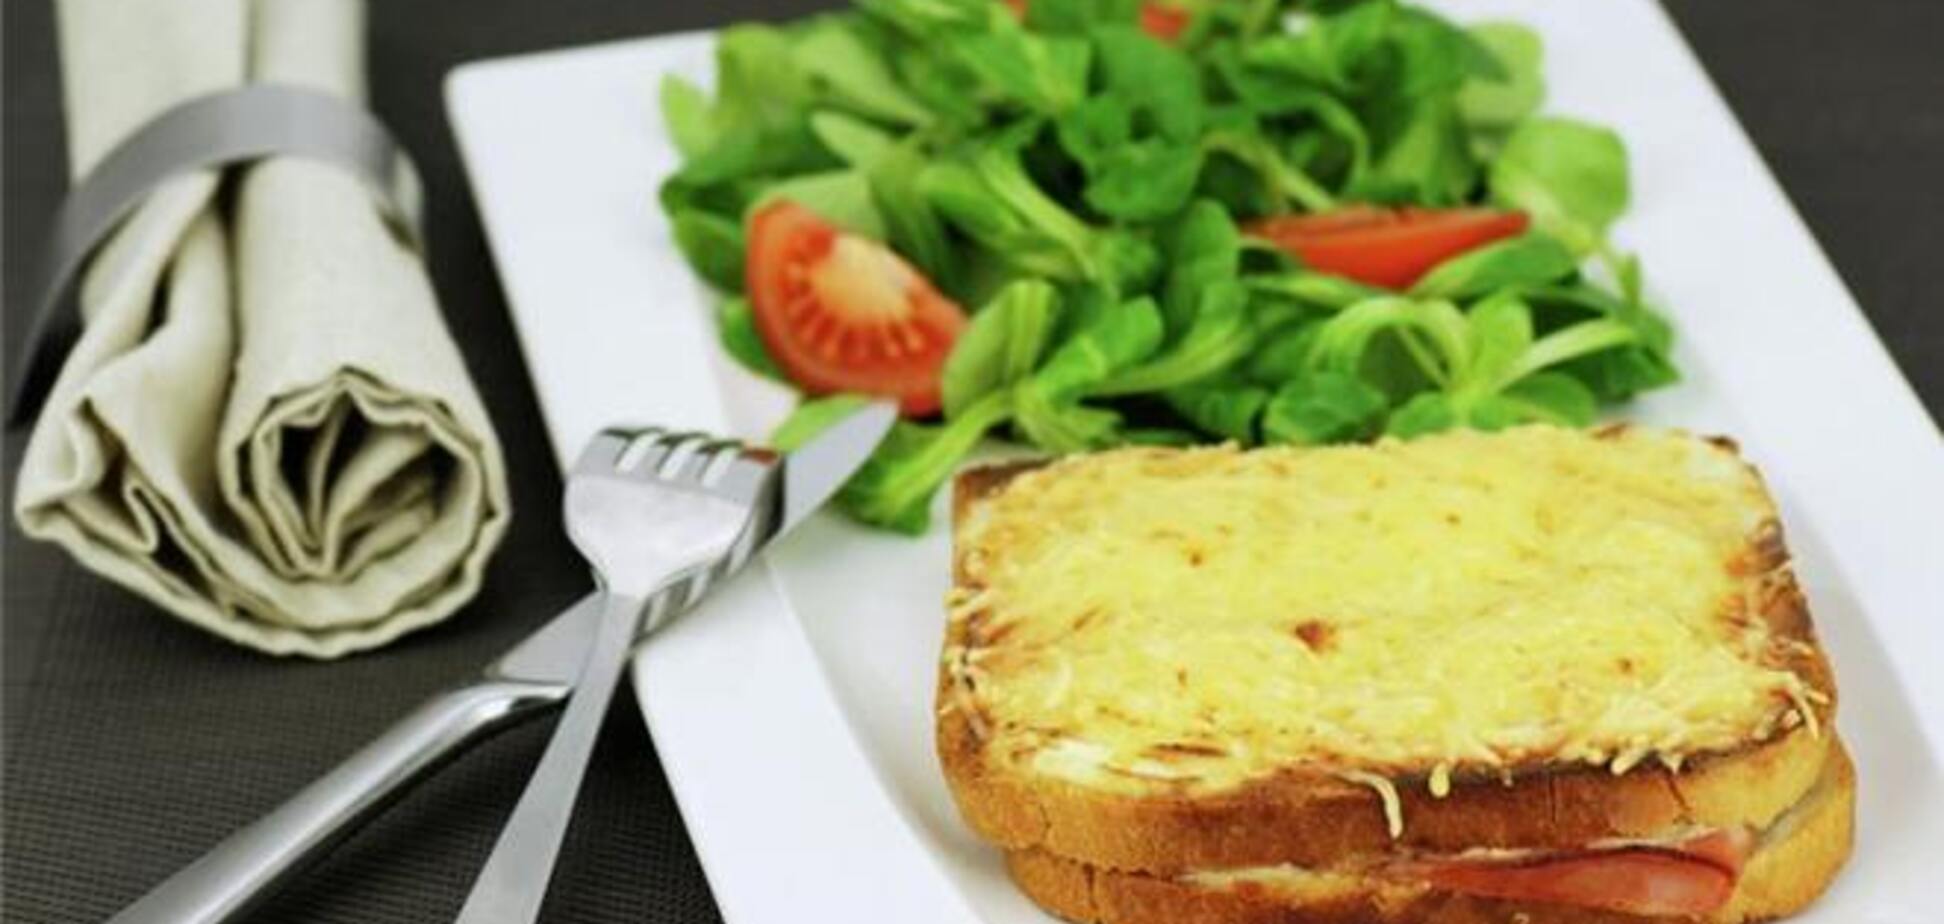 Найдена формула идеального тоста с сыром